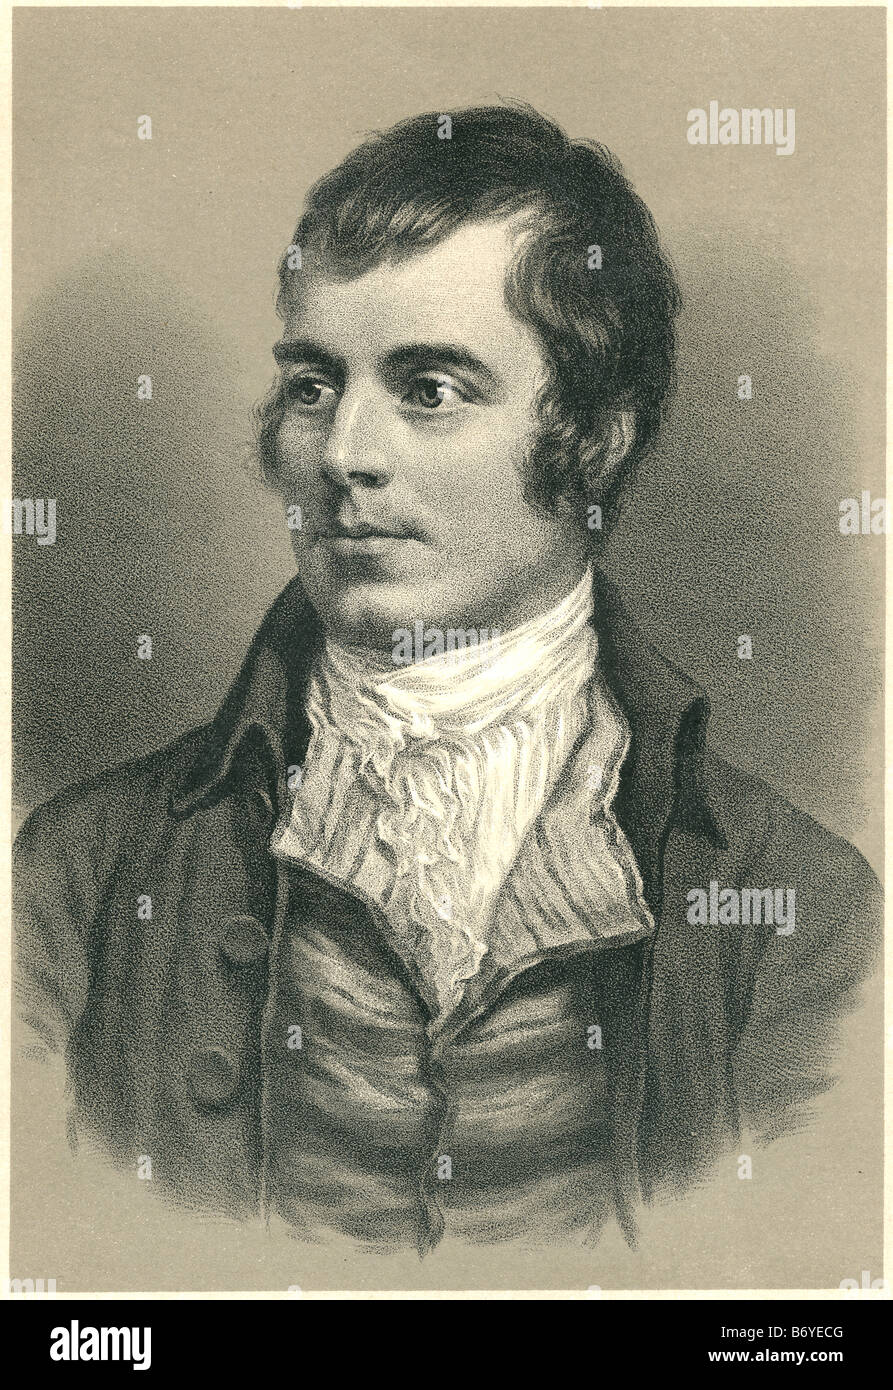 Robert Burns (25 gennaio 1759 - 21 luglio 1796) (noto anche come Rabbie Burns, Scozia preferito del figlio, Plowman poeta, Foto Stock